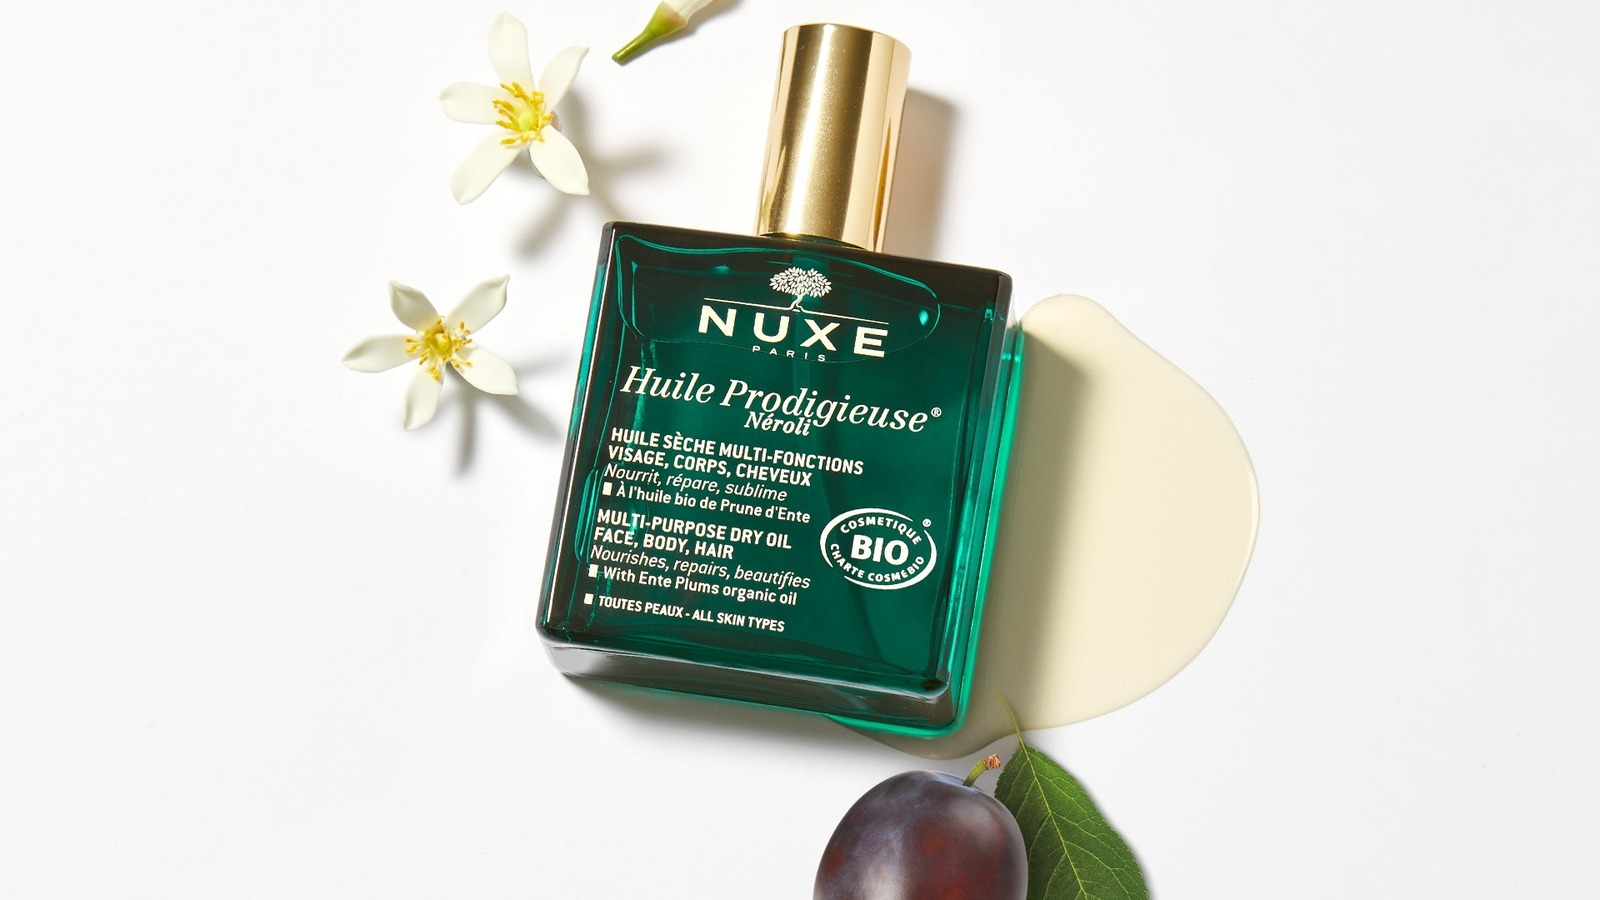 ニュクス“ネロリの香り”の新美容オイル「プロディジュー ネロリ オイル